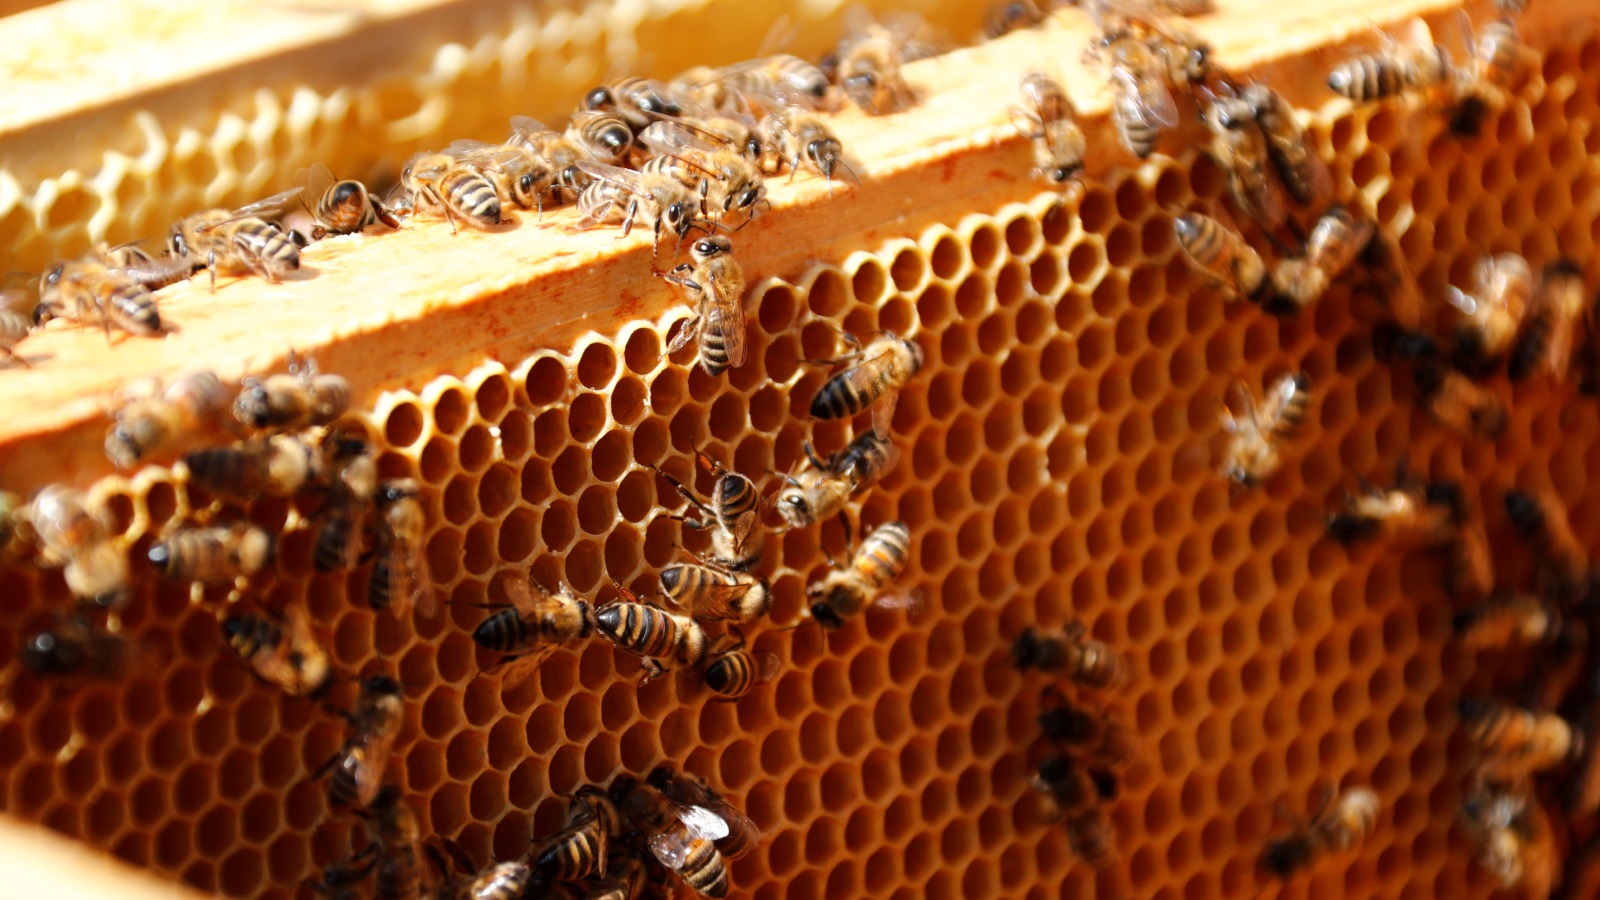 ‪ثلث الطعام الذي نستهلكه يوميا يعتمد على التلقيح وبشكل أساسي على النحل‬ (رويترز)